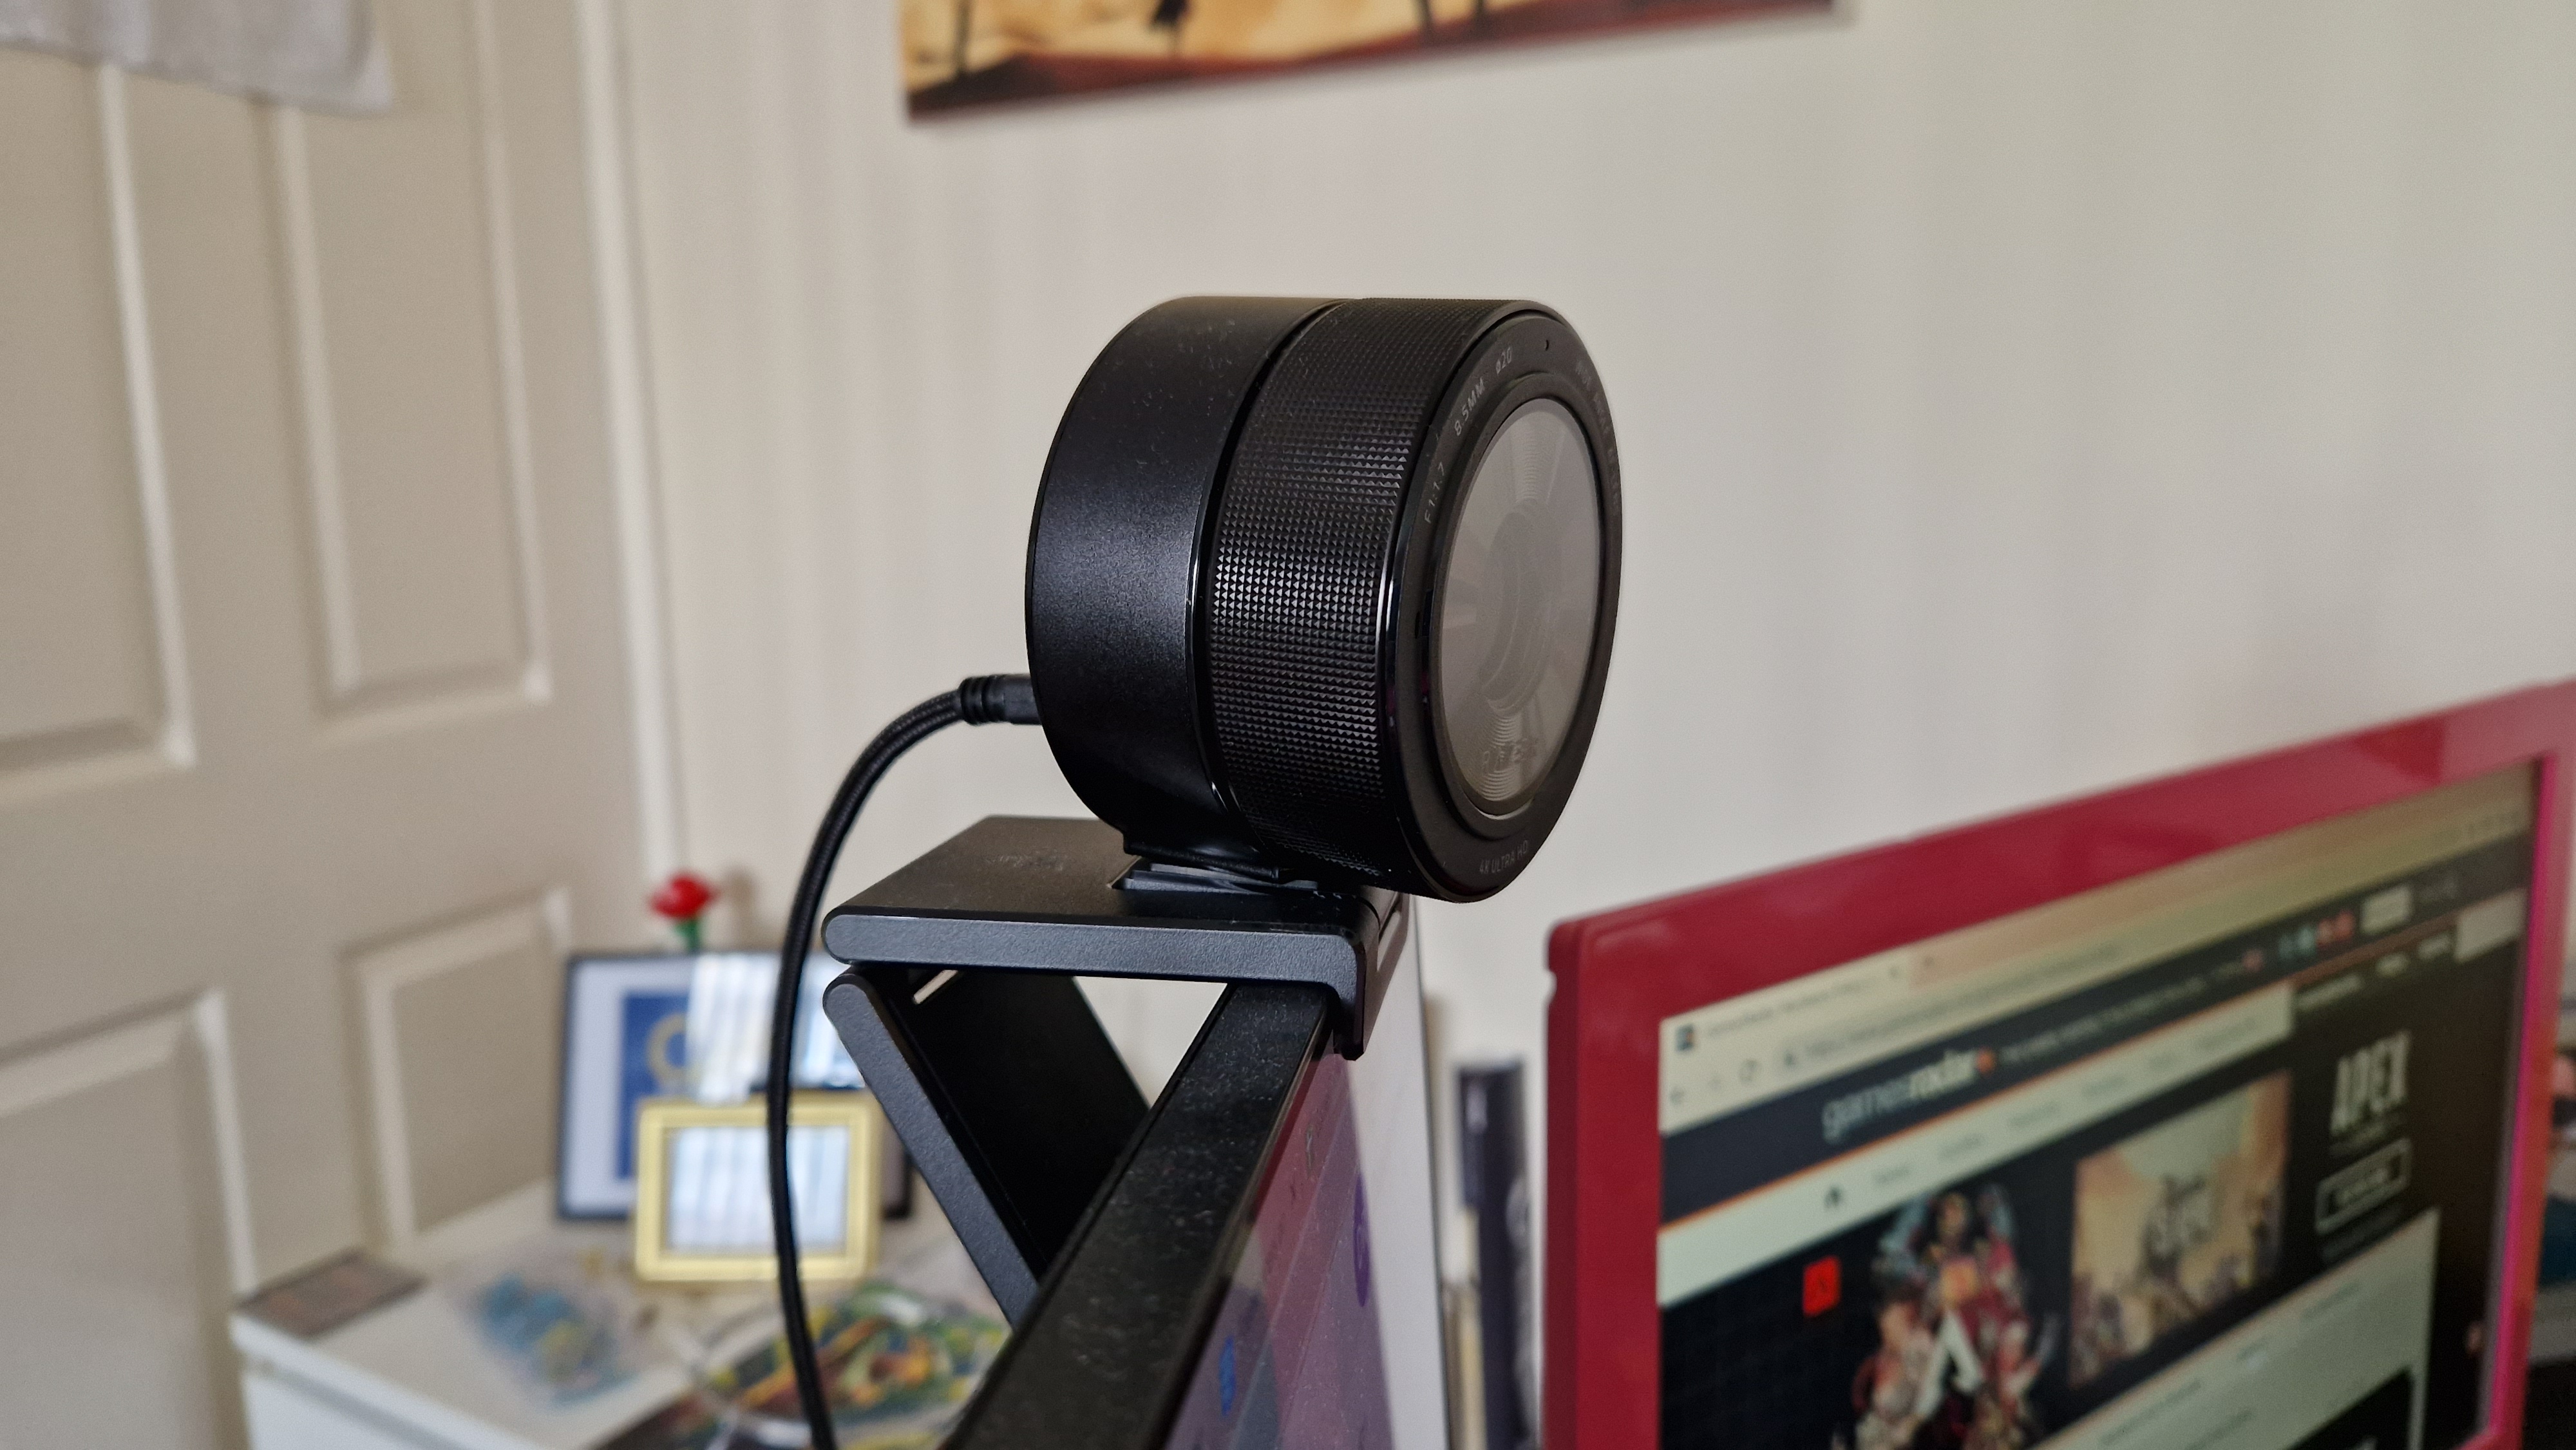 Razer Kiyo Pro webcam review: Excellent but overpriced